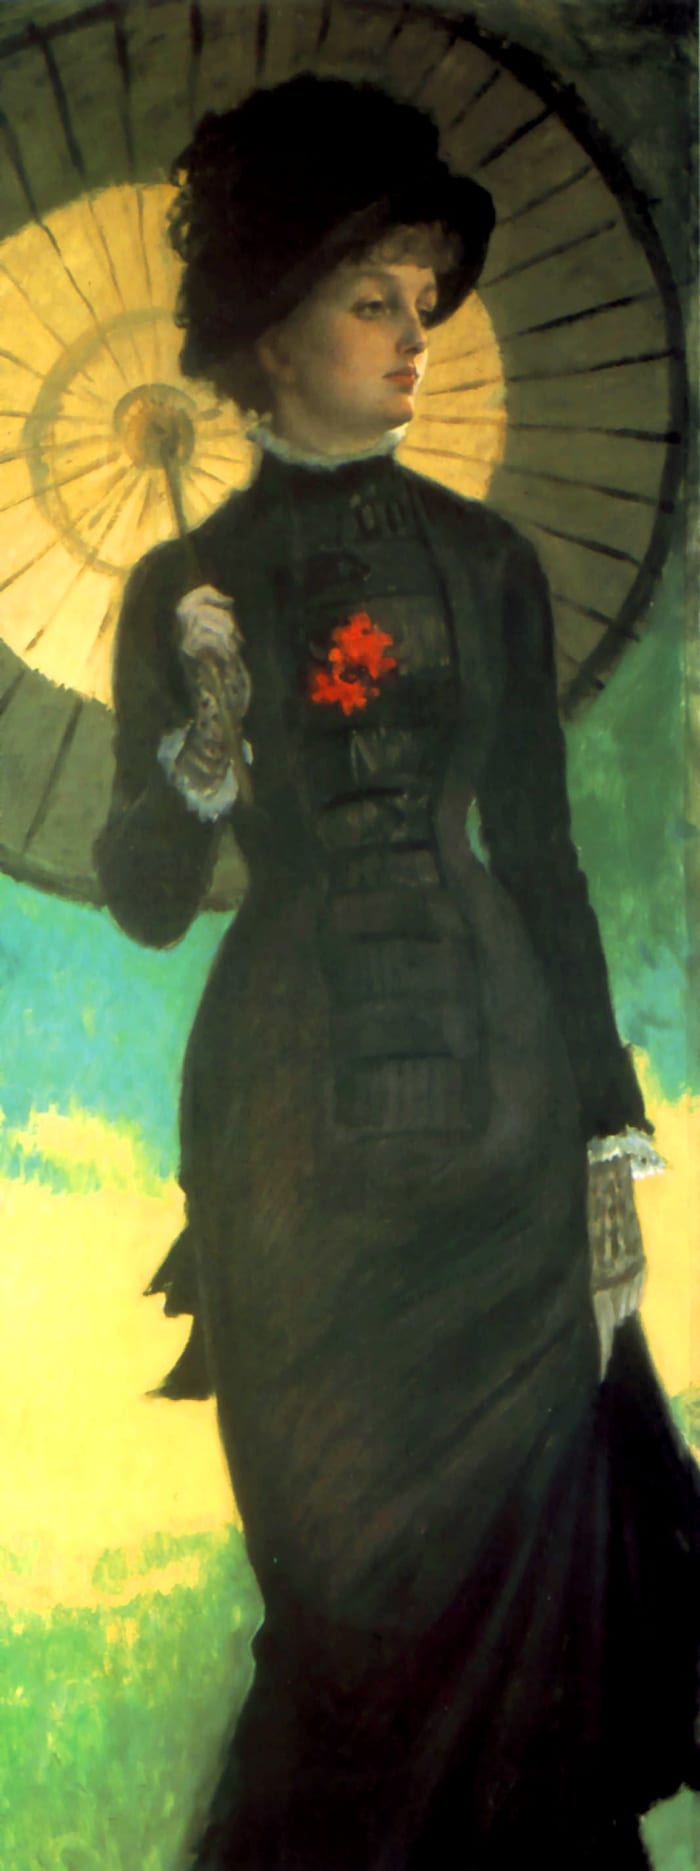 Hercegnő vonal ruha nagyon szűk szoknya pedig napernyő cirka 1879